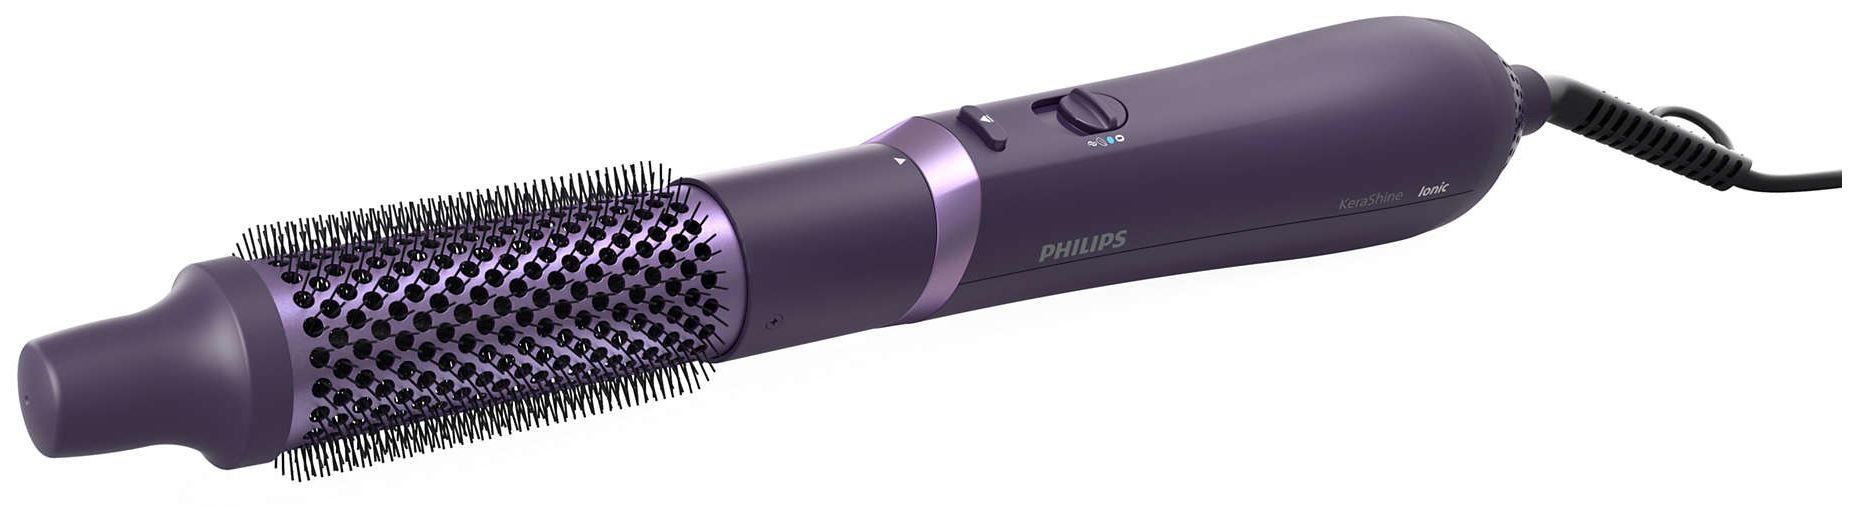 Multistyler (Violett) W von Technomarkt Philips BHA305/00 800 series expert 3000